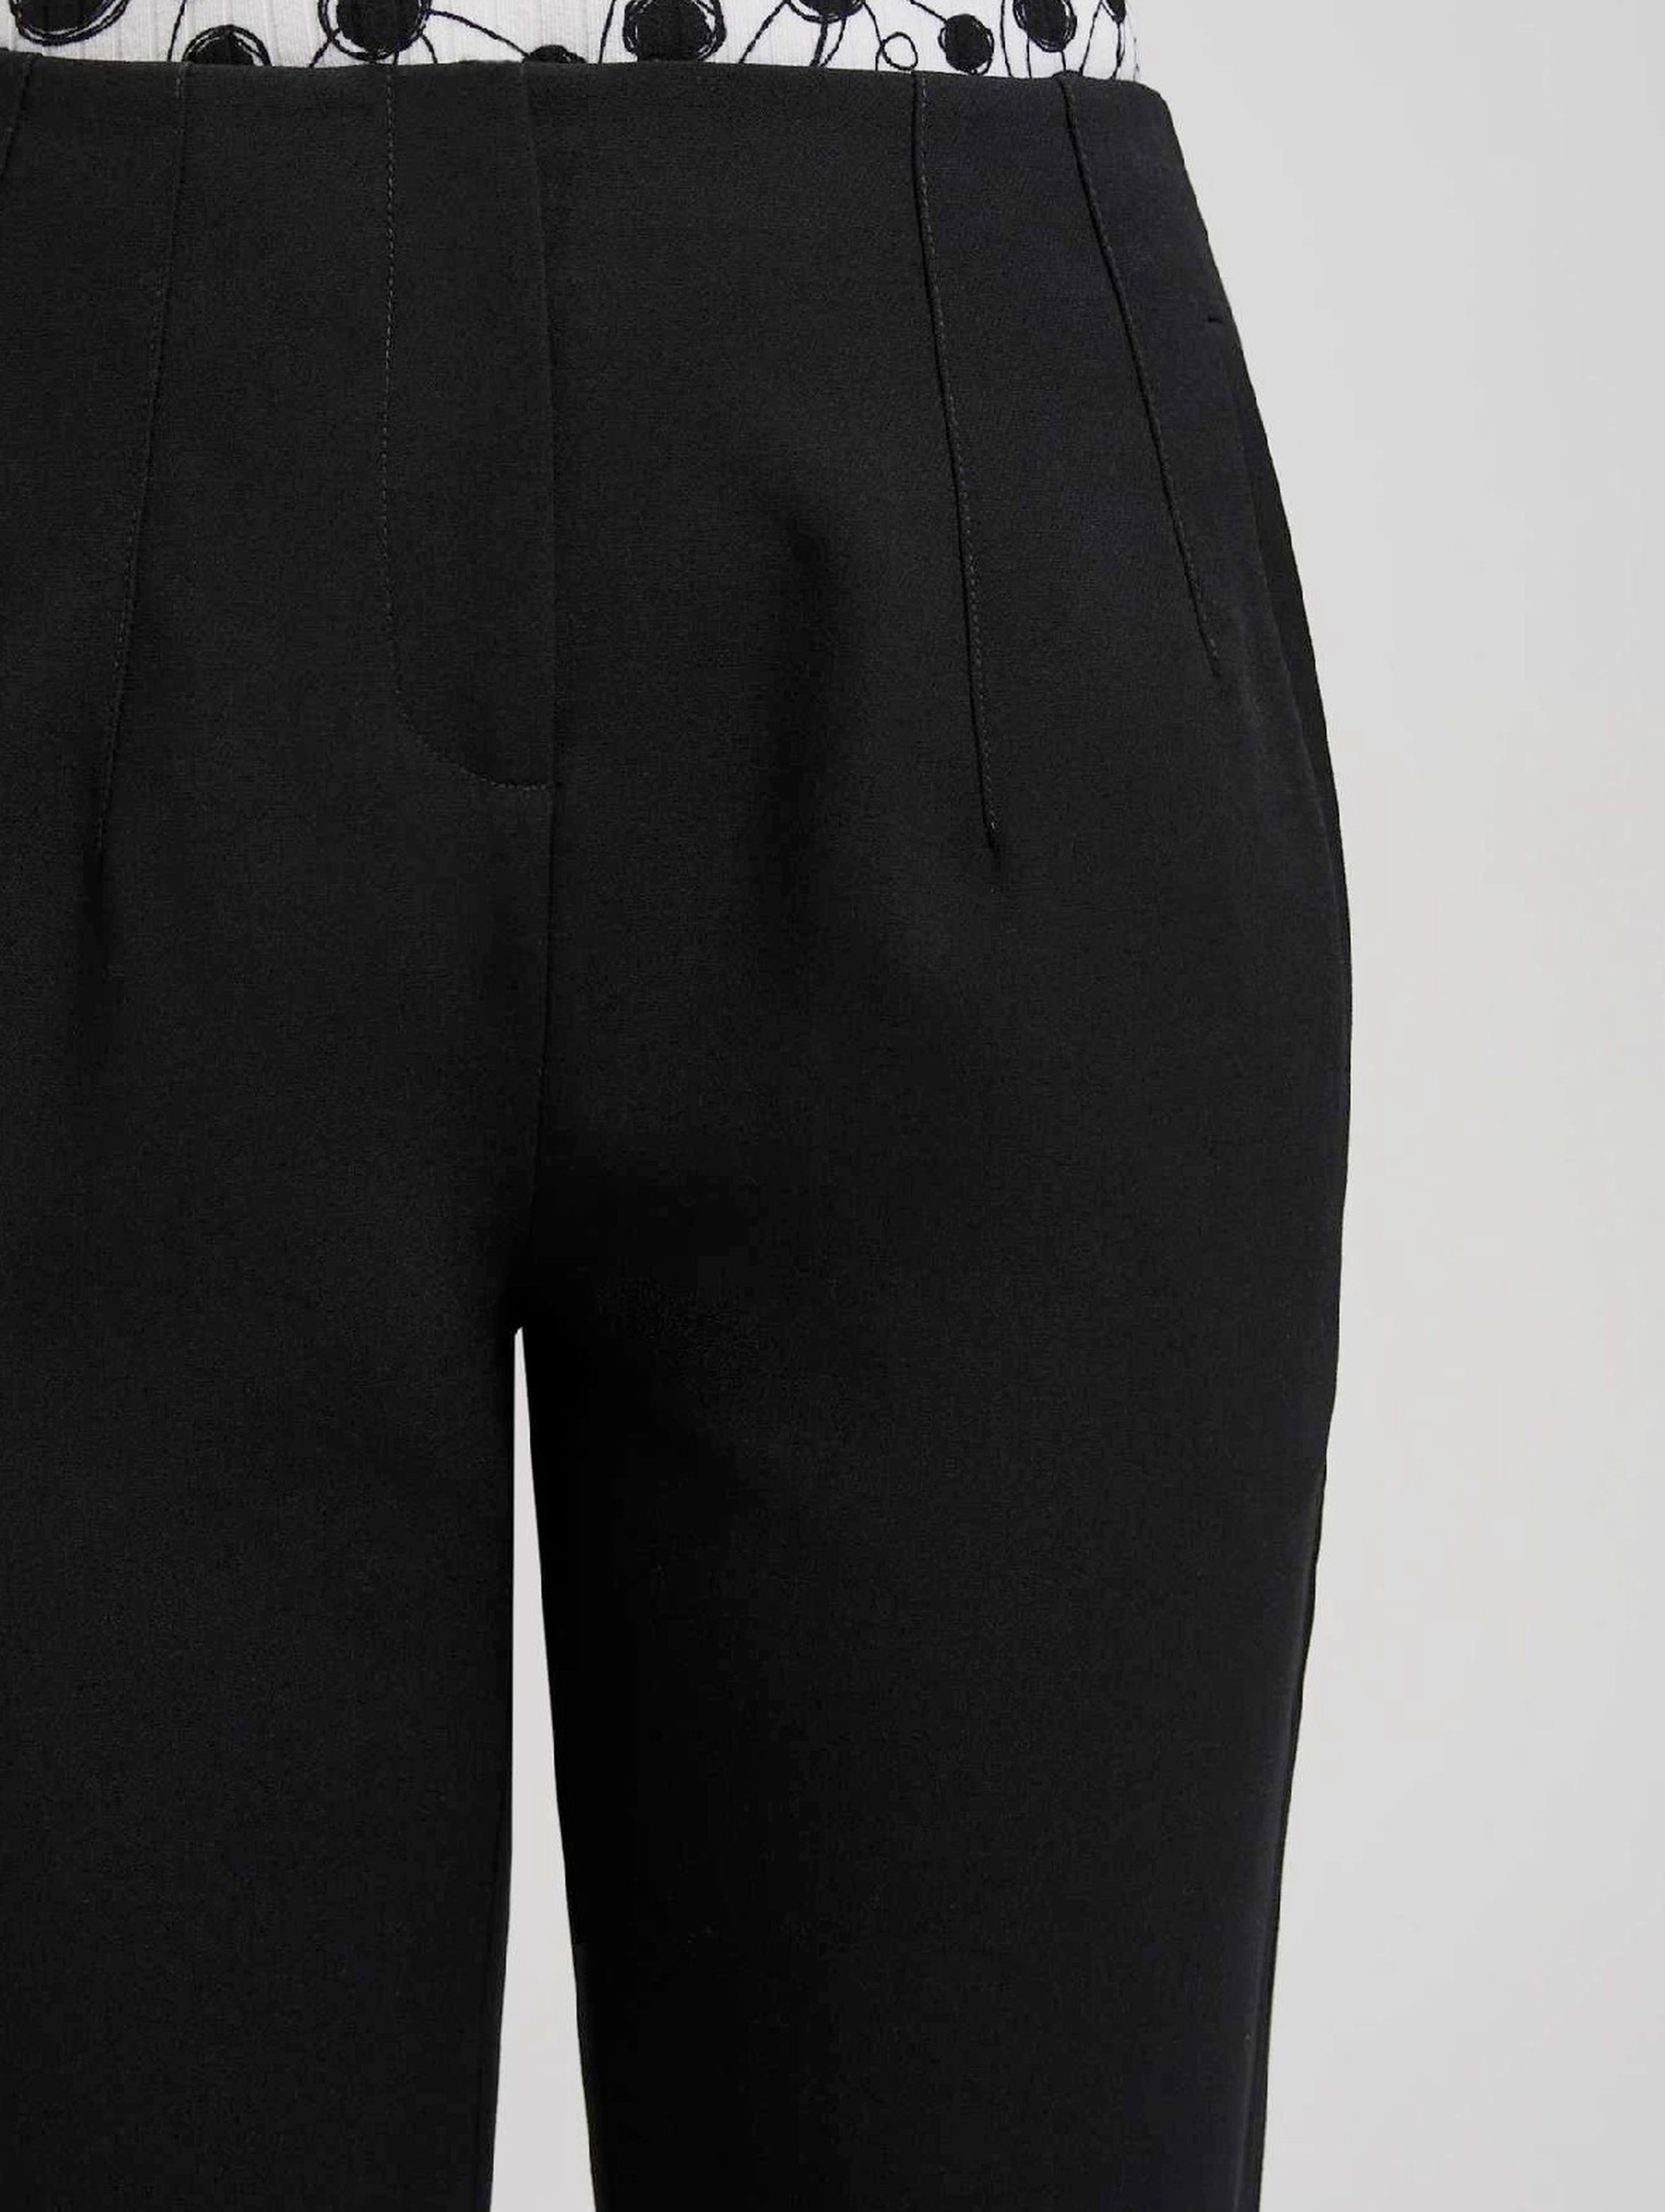 Czarne spodnie gładkie damskie z prostą nogawką